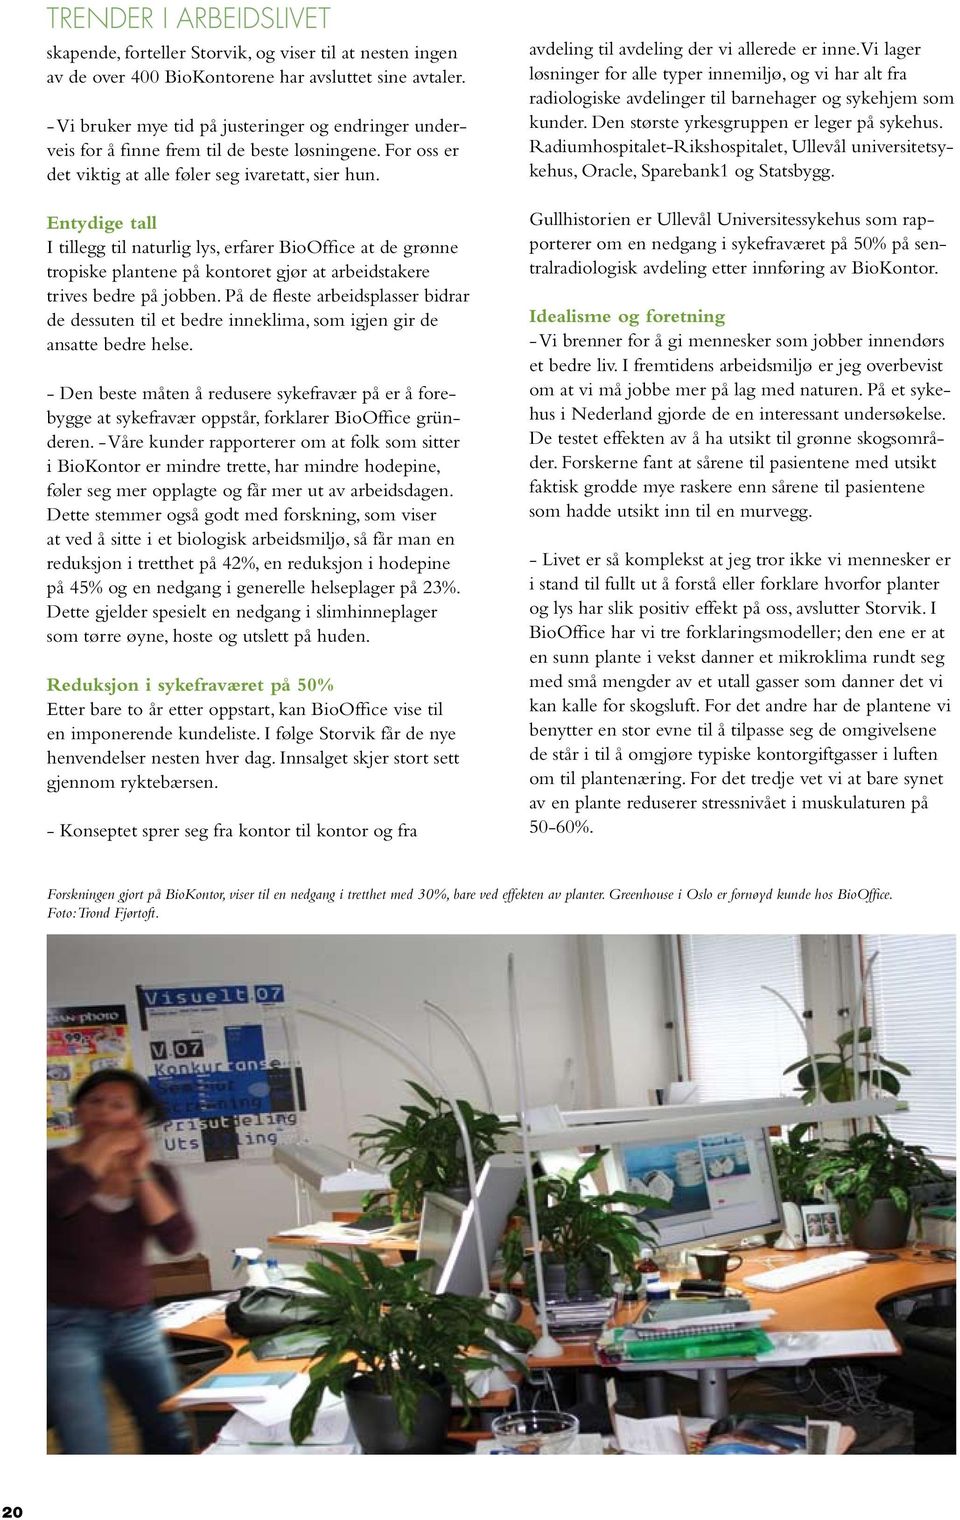 Entydige tall I tillegg til naturlig lys, erfarer BioOffice at de grønne tropiske plantene på kontoret gjør at arbeidstakere trives bedre på jobben.